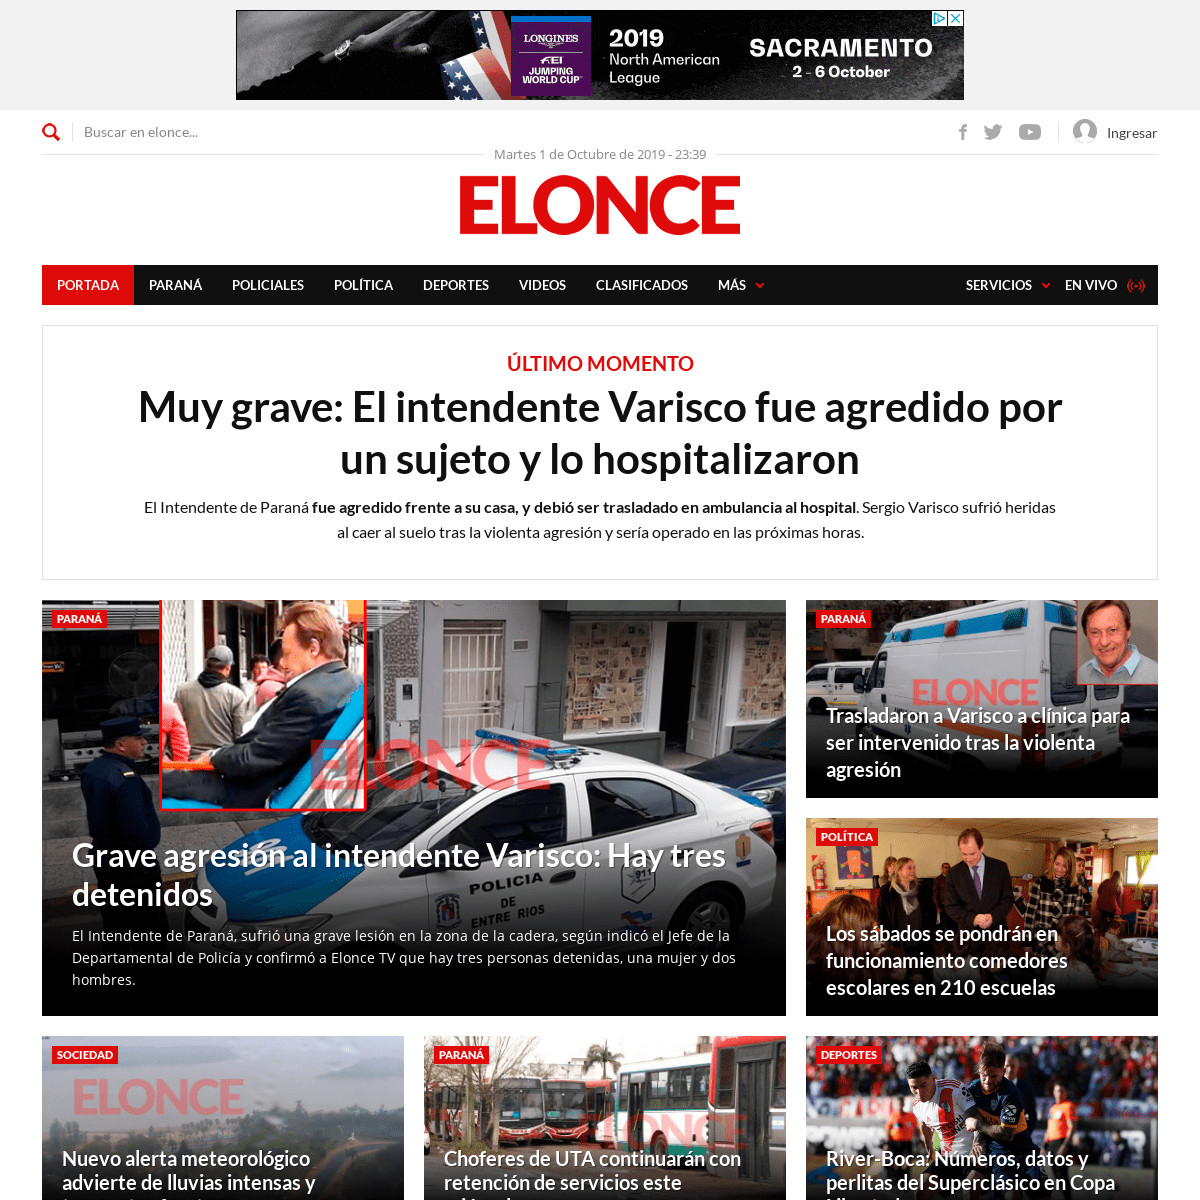 Muy grave: El intendente Varisco fue agredido por un sujeto y lo hospitalizaron - Elonce.com